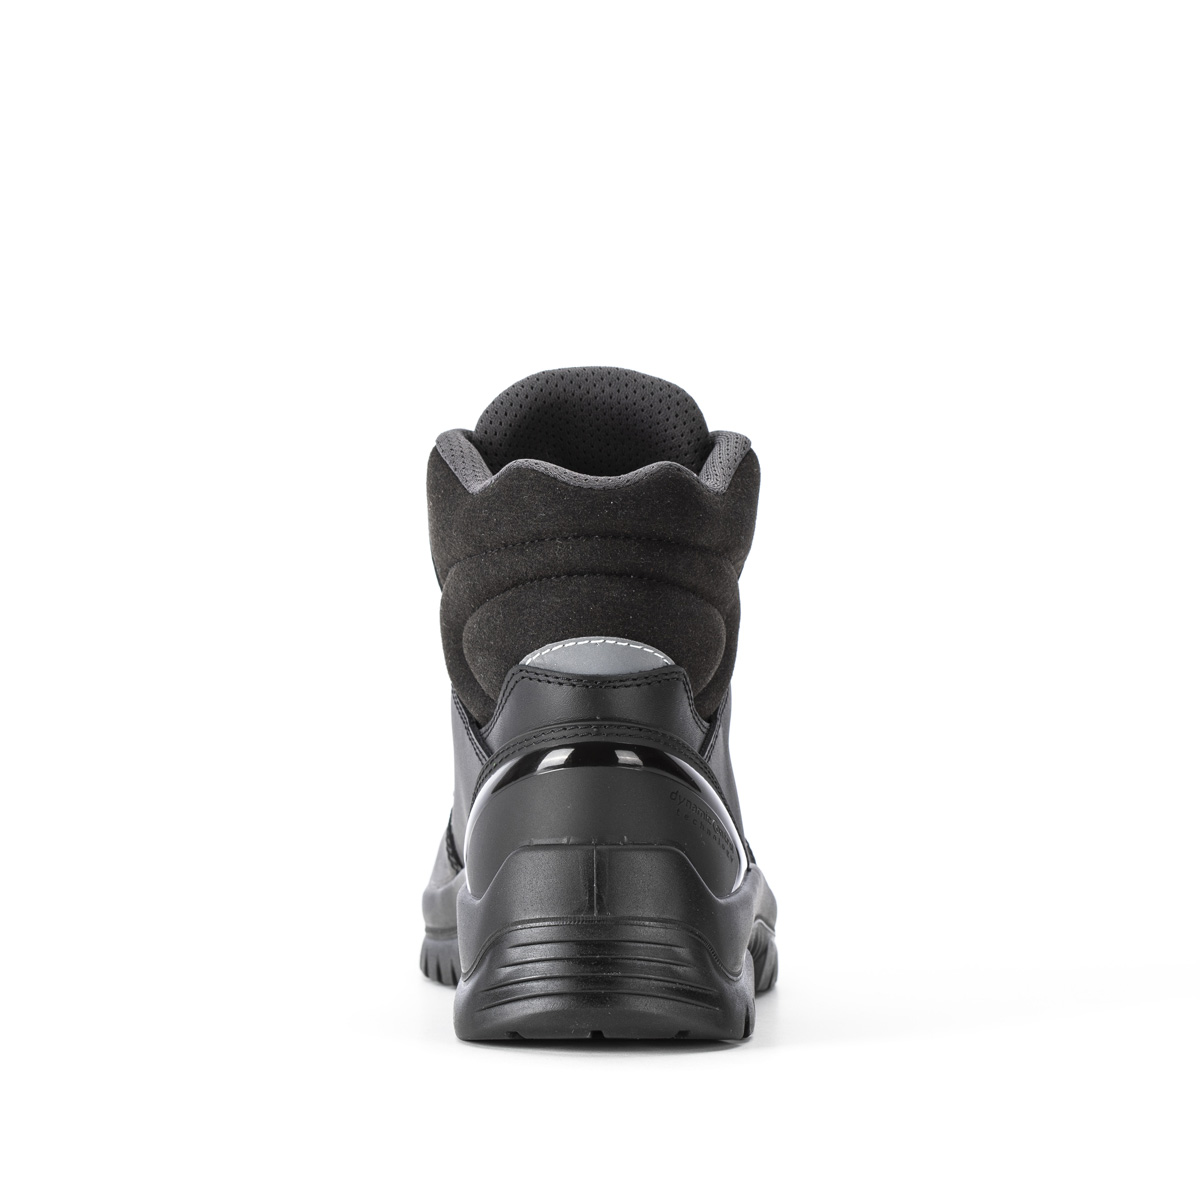 Horizon STEEL BOA® - Ankle boot con classe di protezione S3 SRC ...